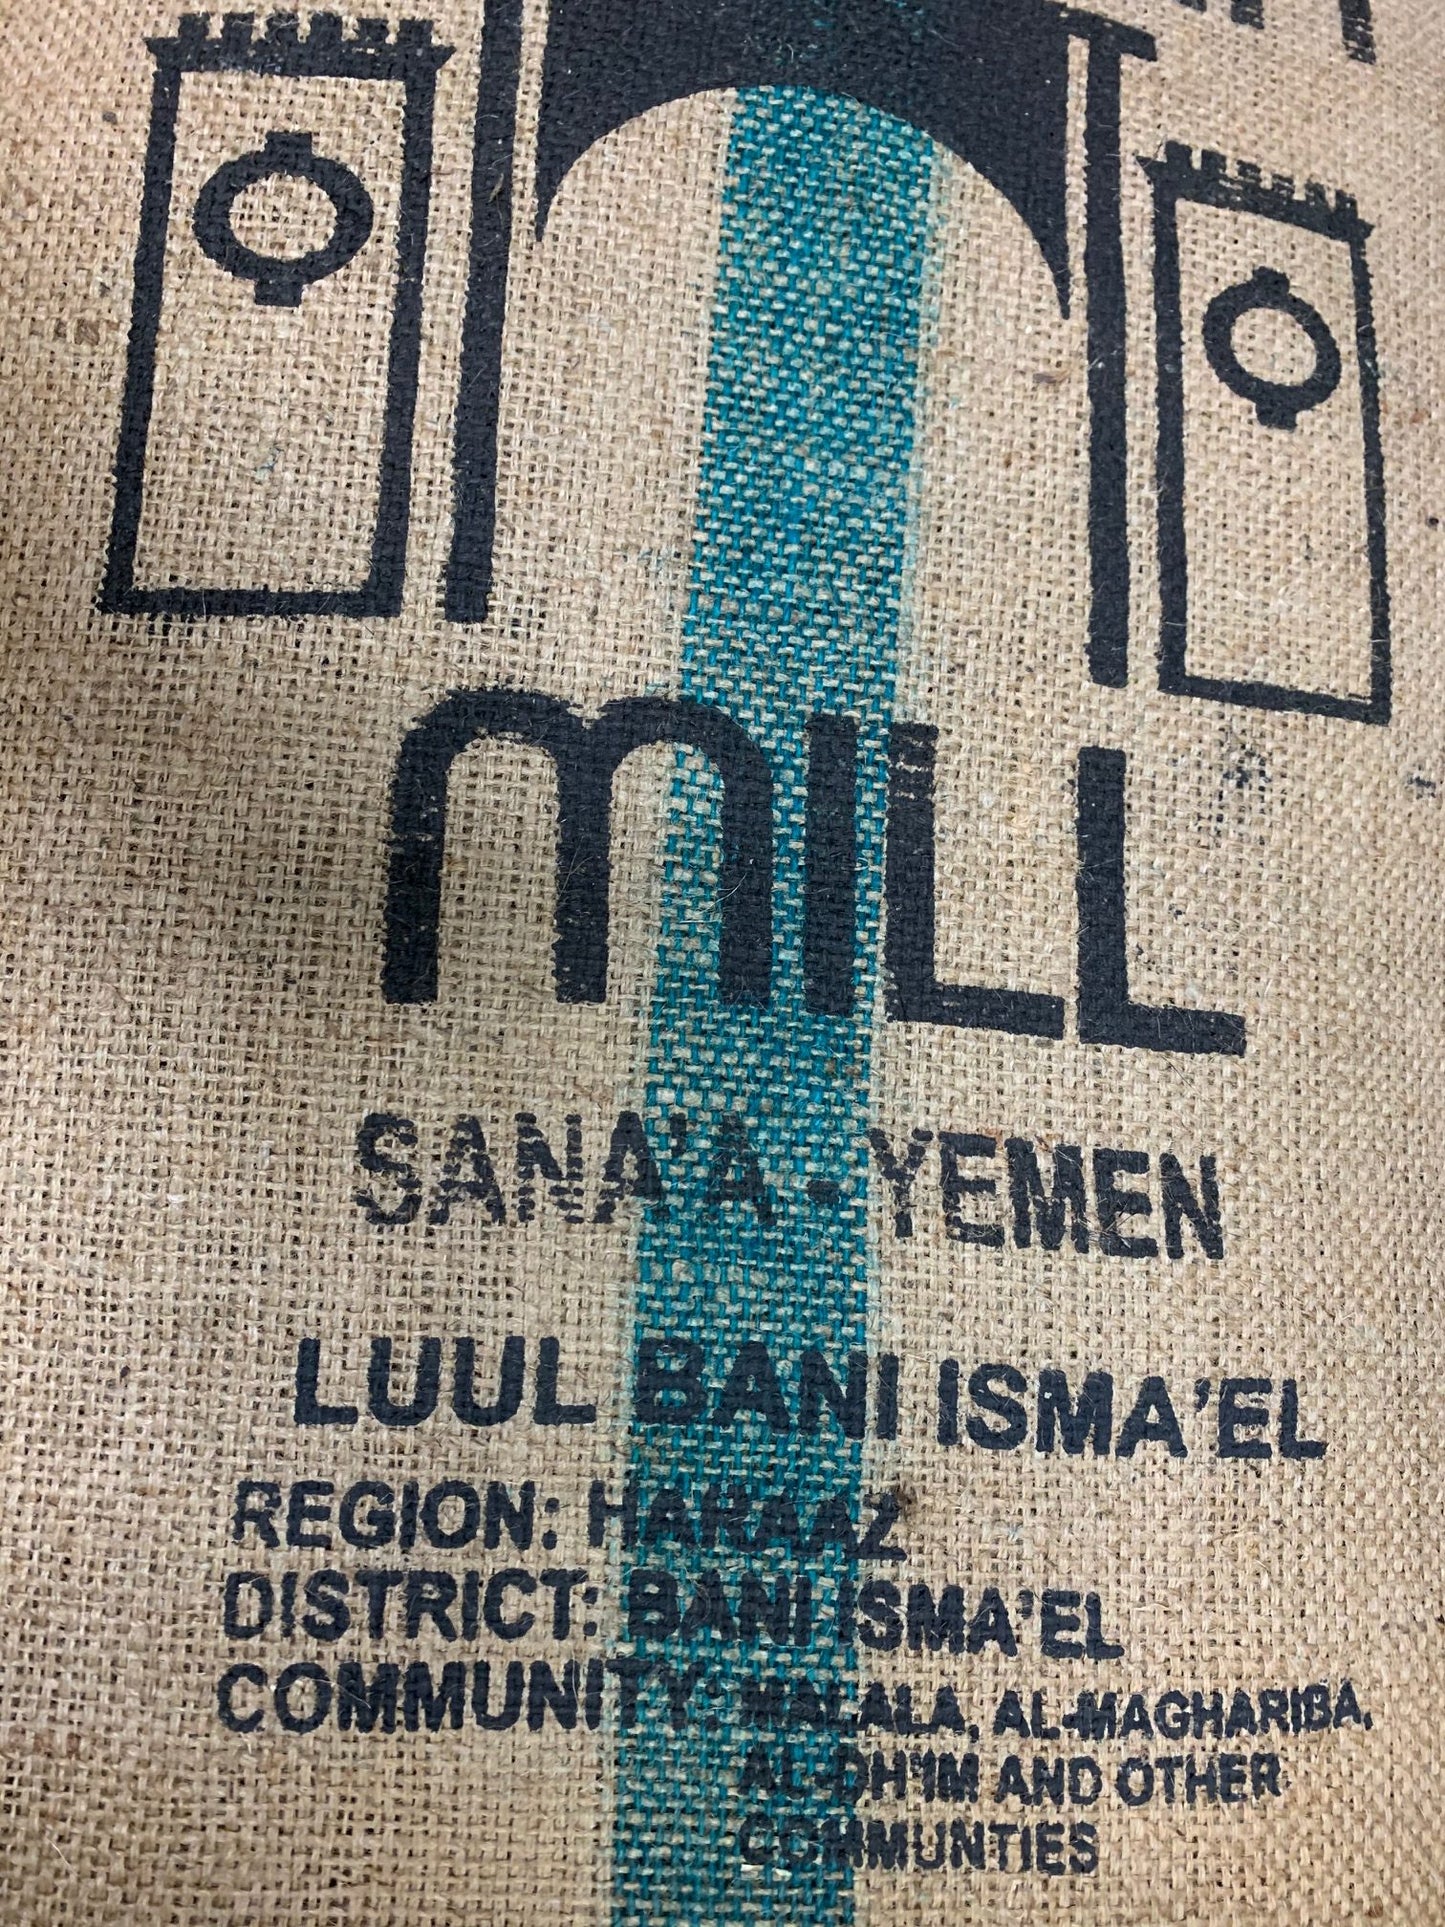 Yemen Mocha coffee burlap sack